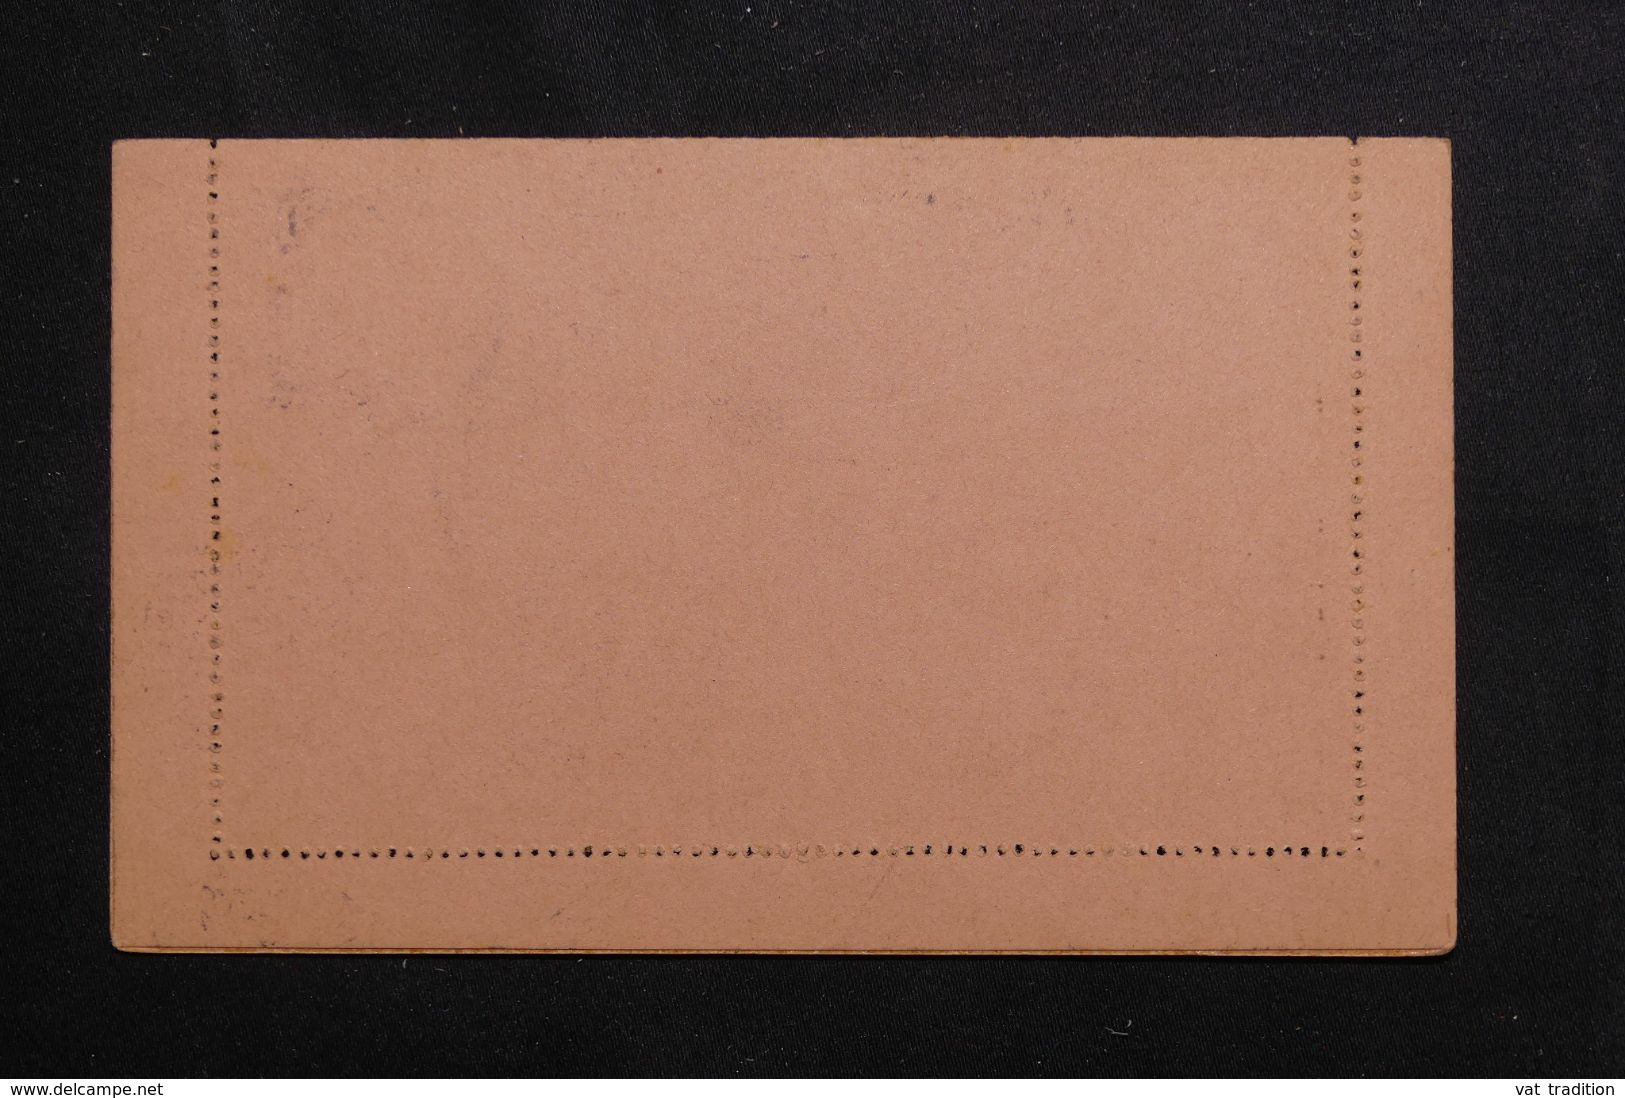 SOUDAN - Entier Postal Type Groupe Avec Oblitération De Kati - L 65546 - Briefe U. Dokumente